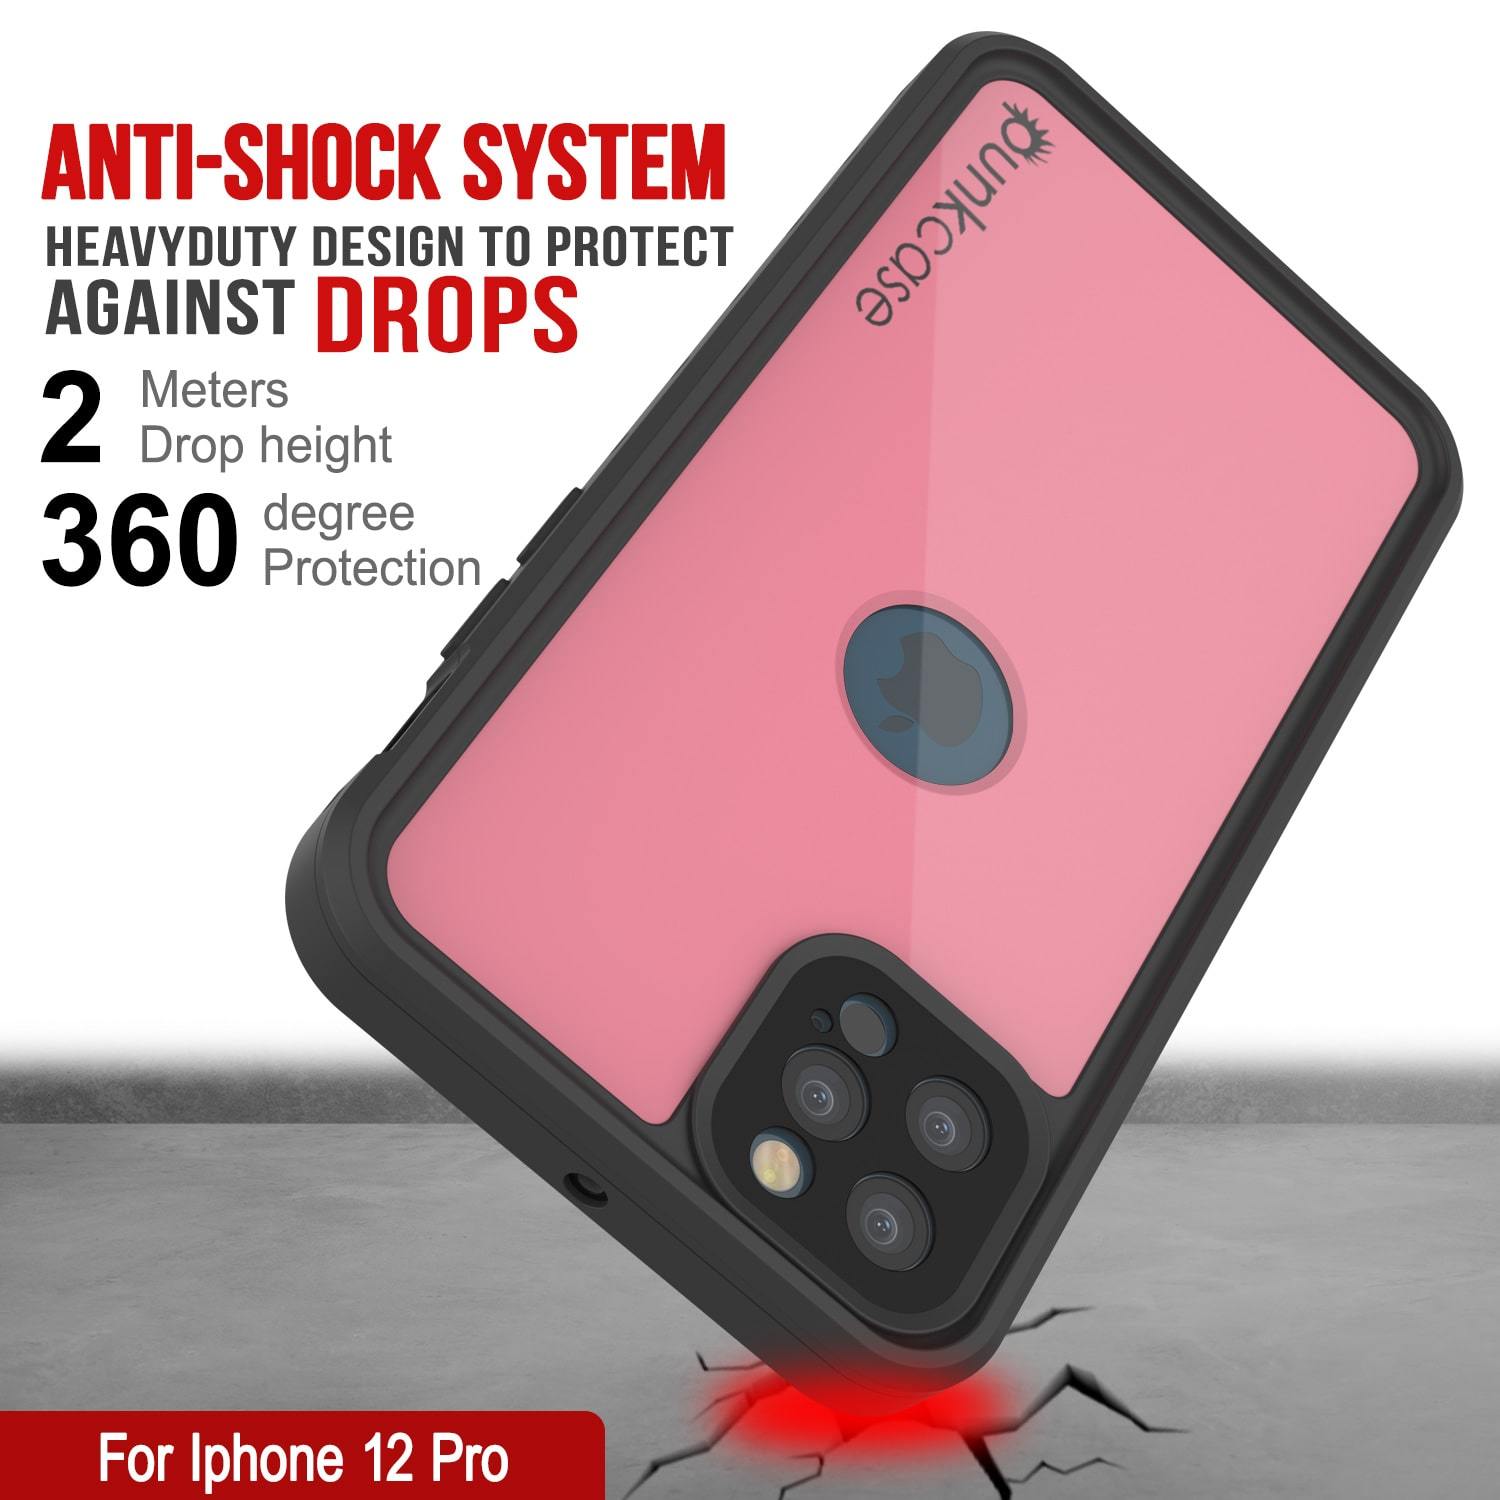 iPhone 12 Pro Waterproof IP68 Case, Punkcase [Pink] [StudStar Series] [Slim Fit] [Dirtproof]